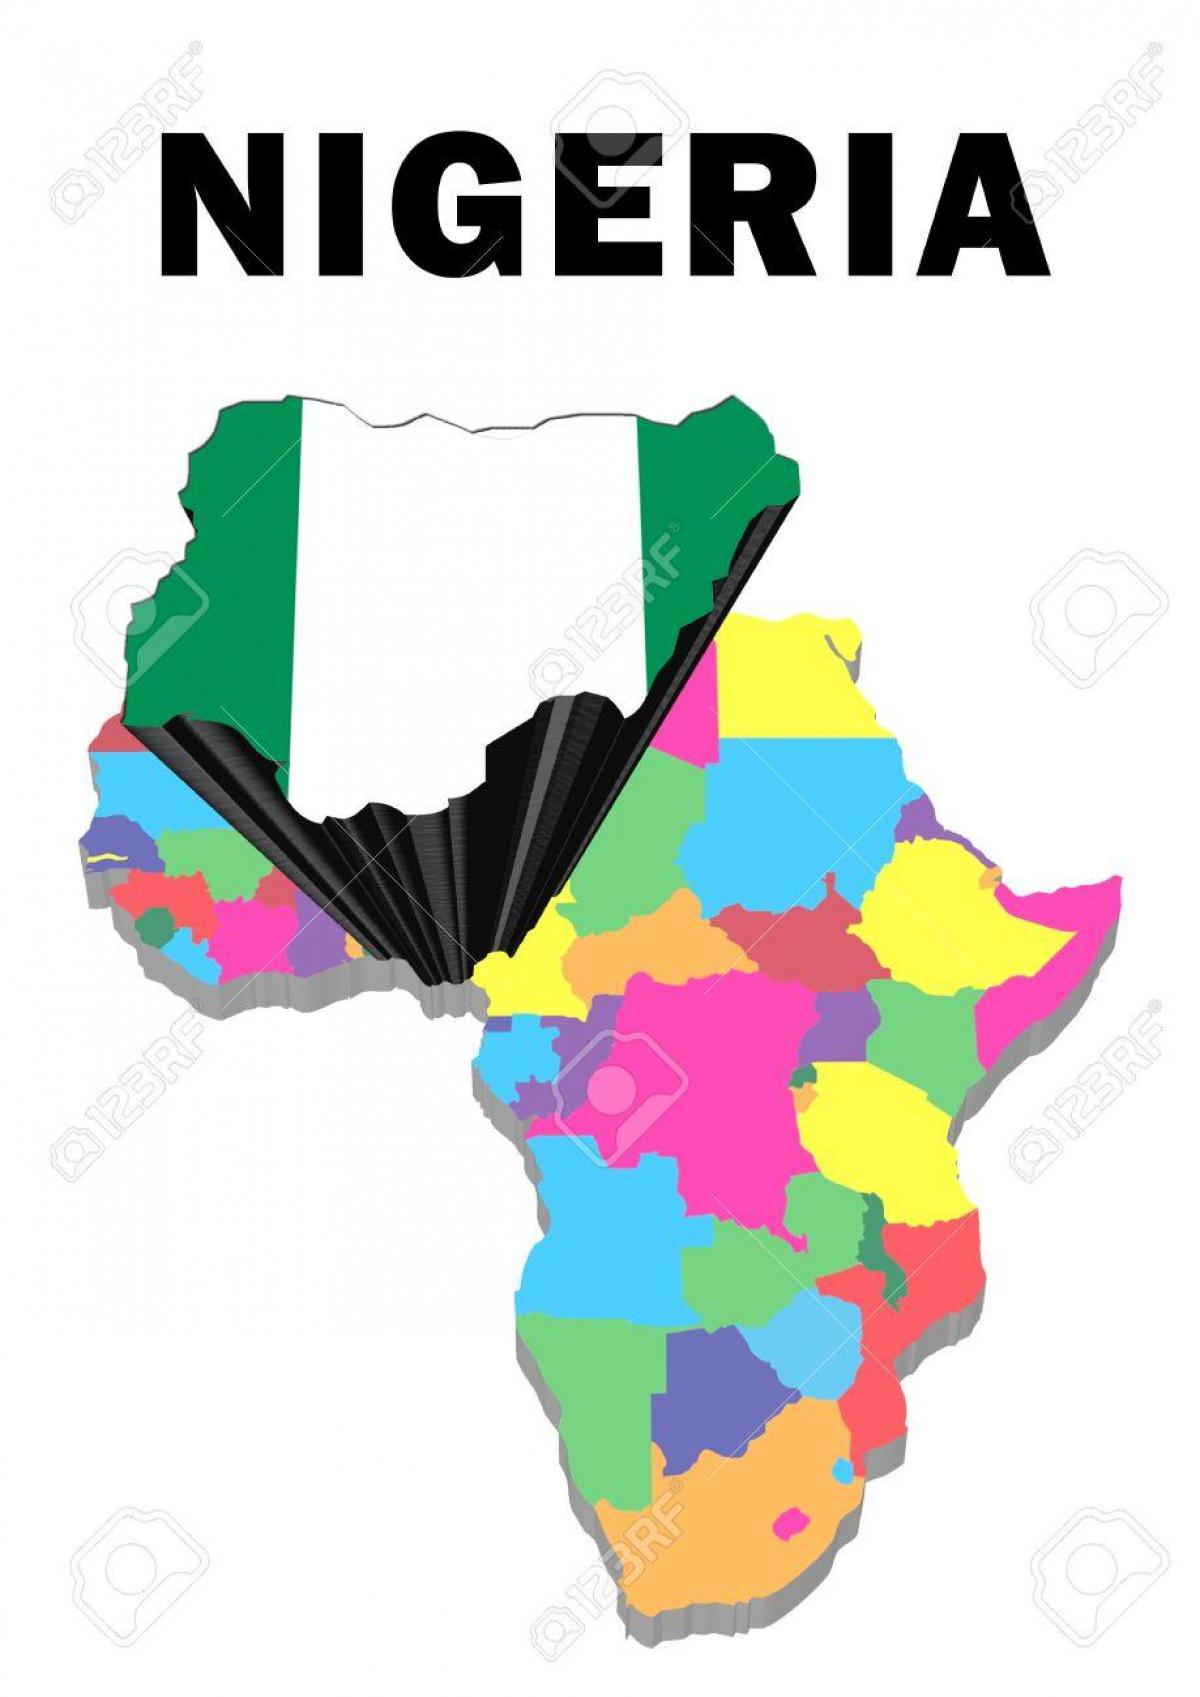 harta e afrikës me nigeri theksuar